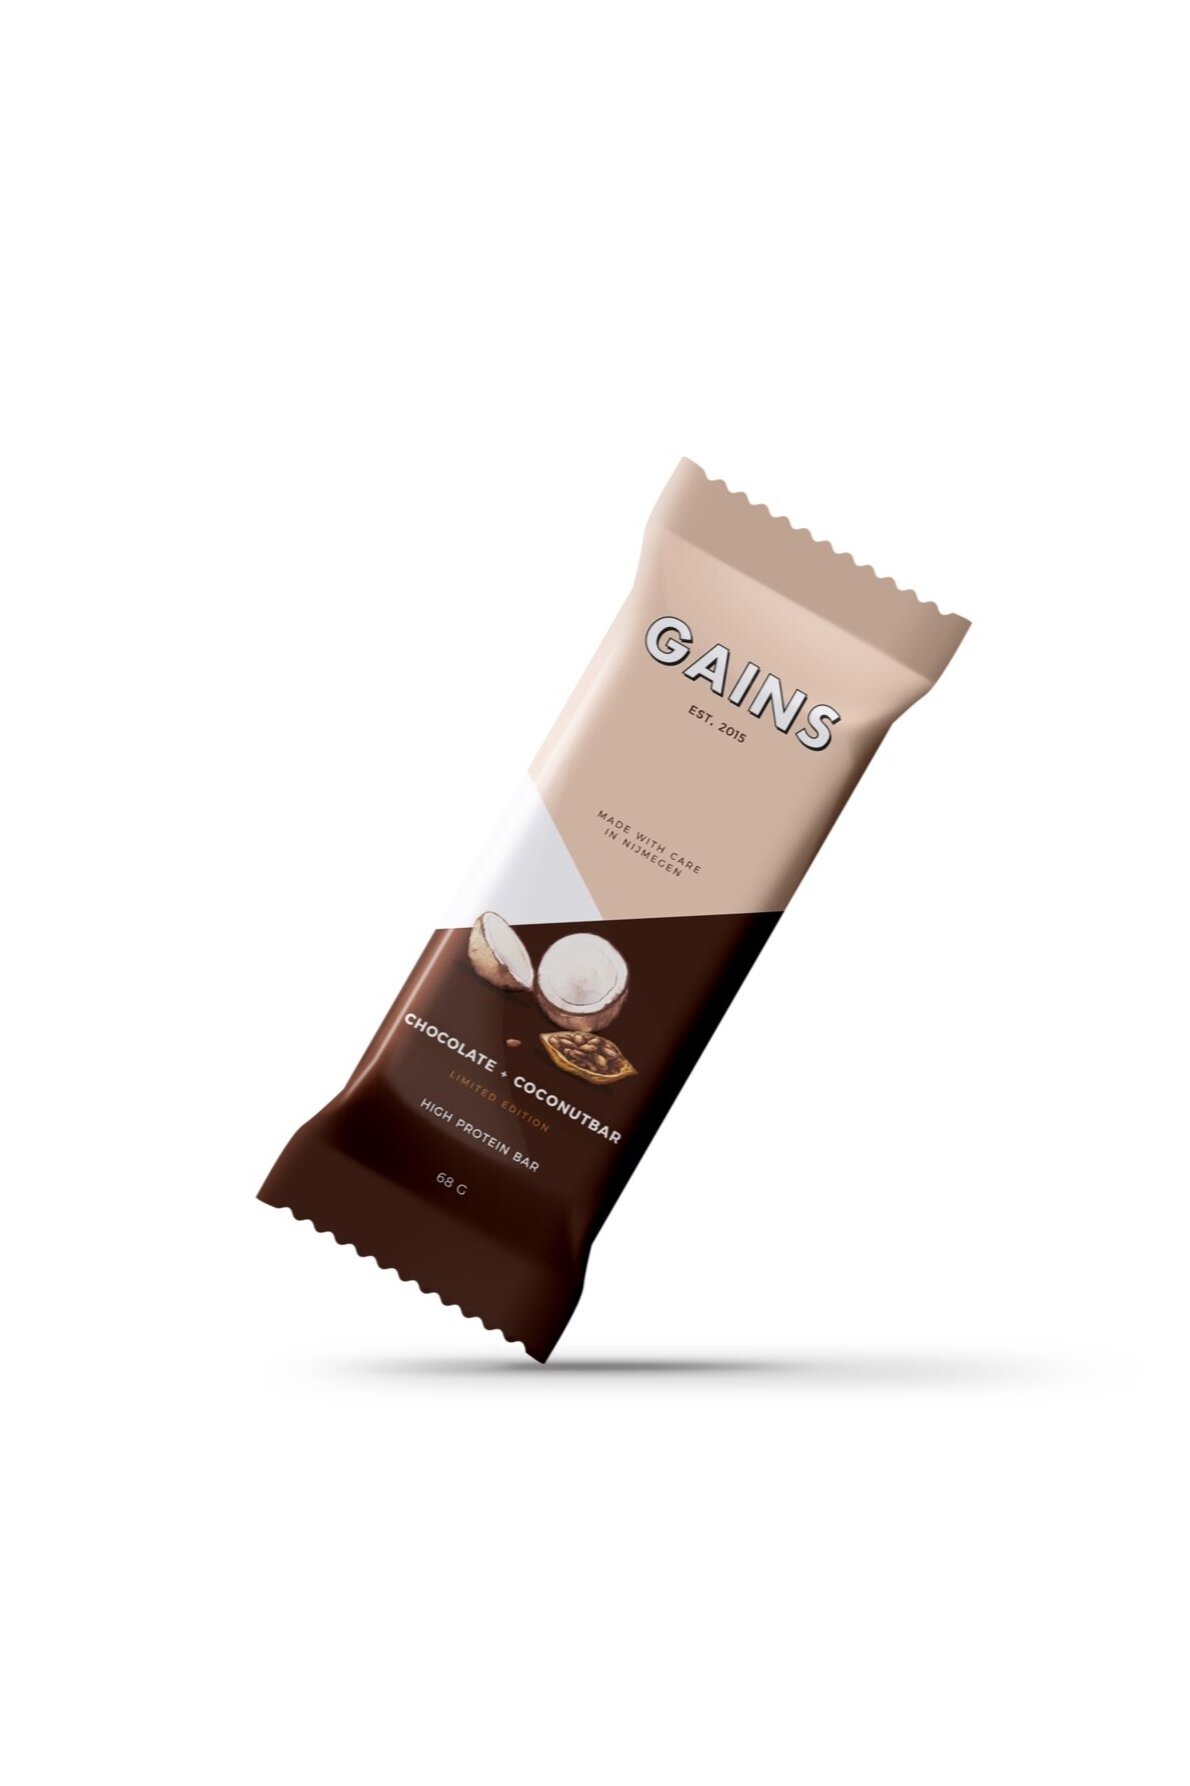 GAINS_Ontwerp_Chocolate_Packaging.jpg